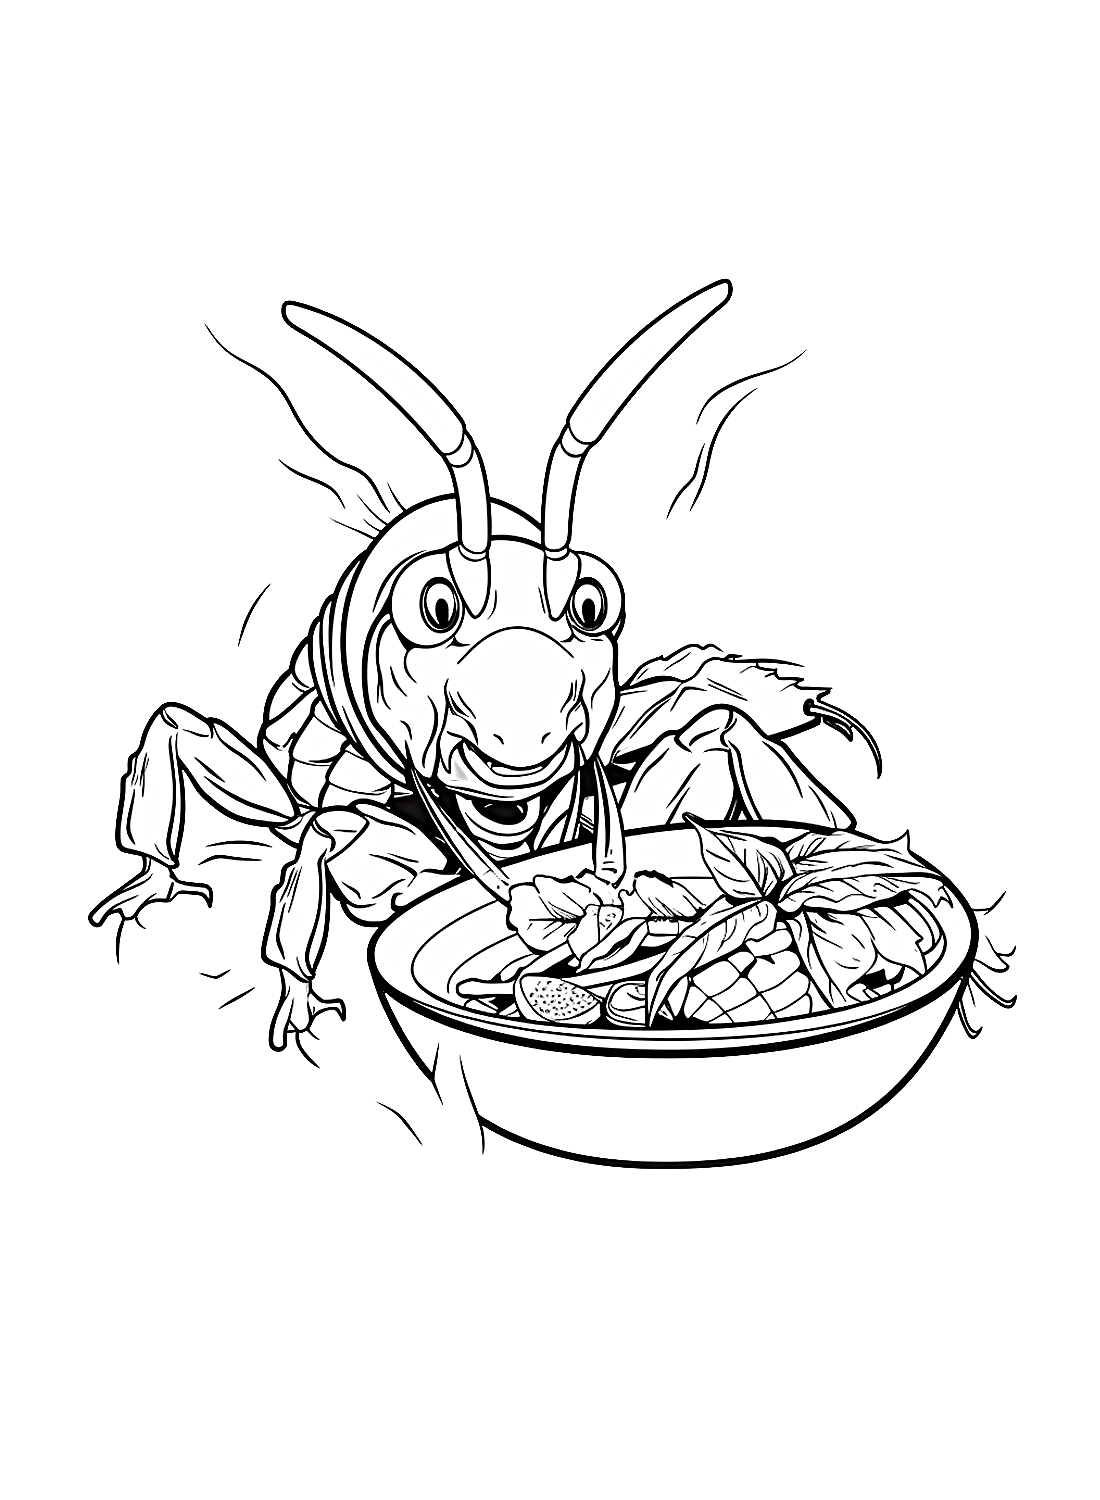 Lo scarafaggio mangia la verdura dallo scarafaggio